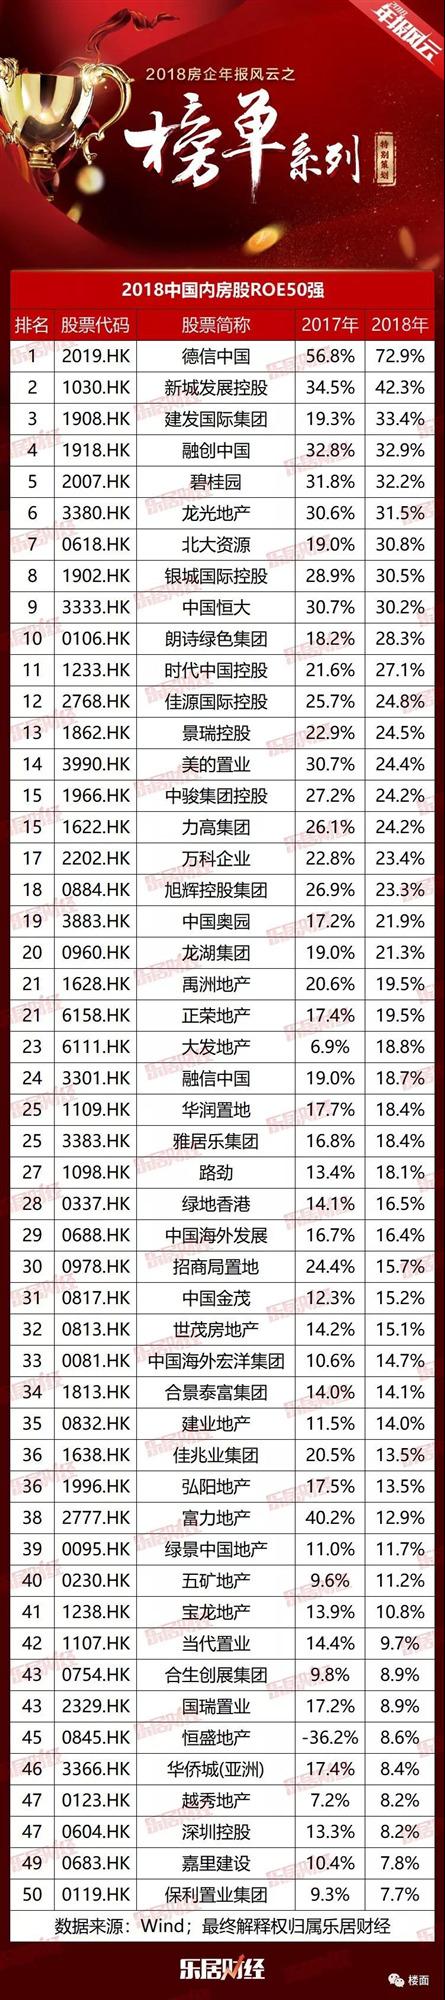 德信地产中国排行第几_德信中国夺得2018中国地产内房股ROE排行榜第一名